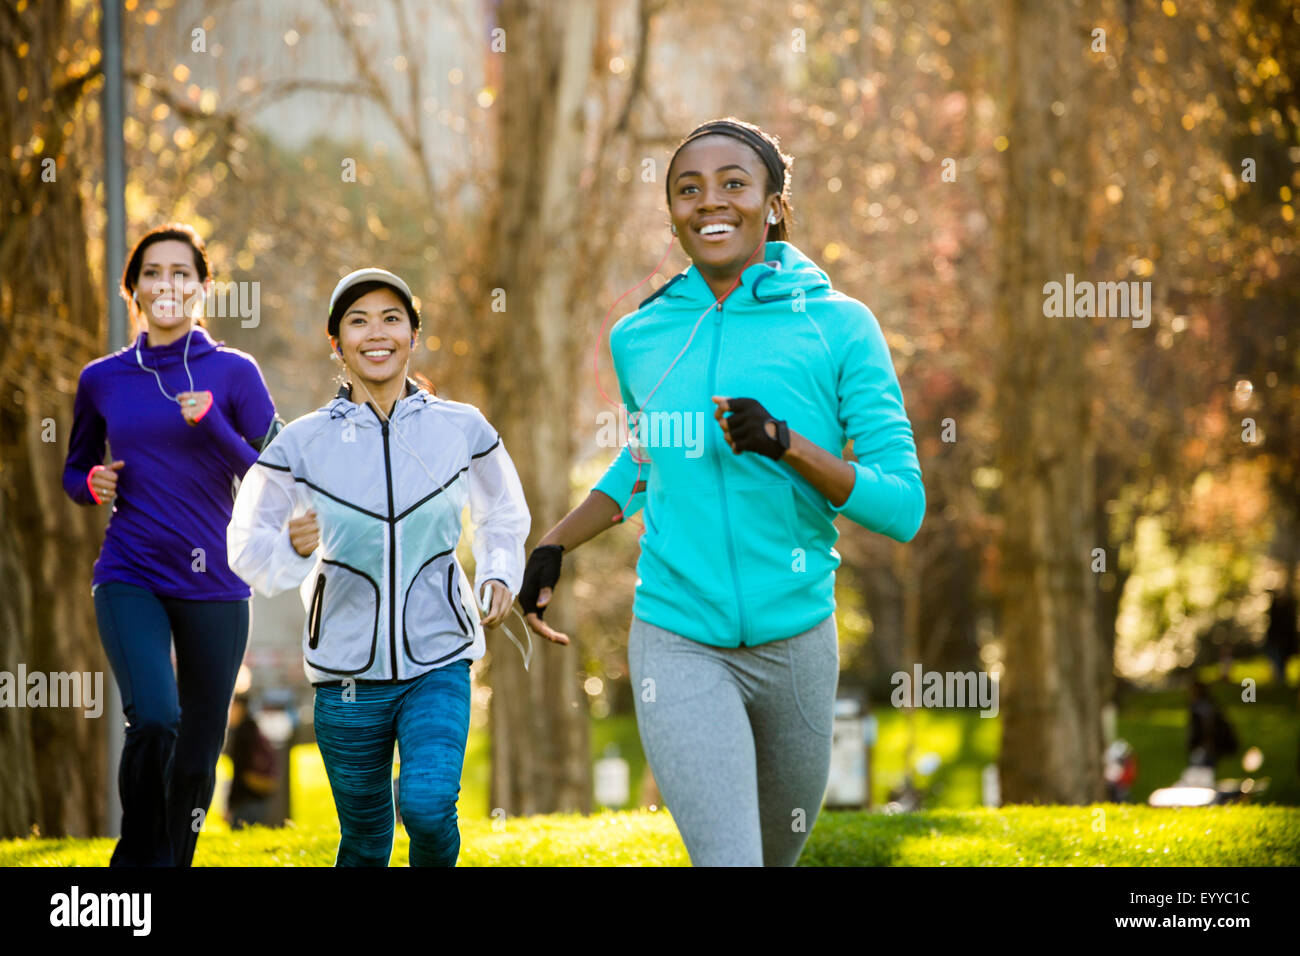 Les femmes running in park Banque D'Images